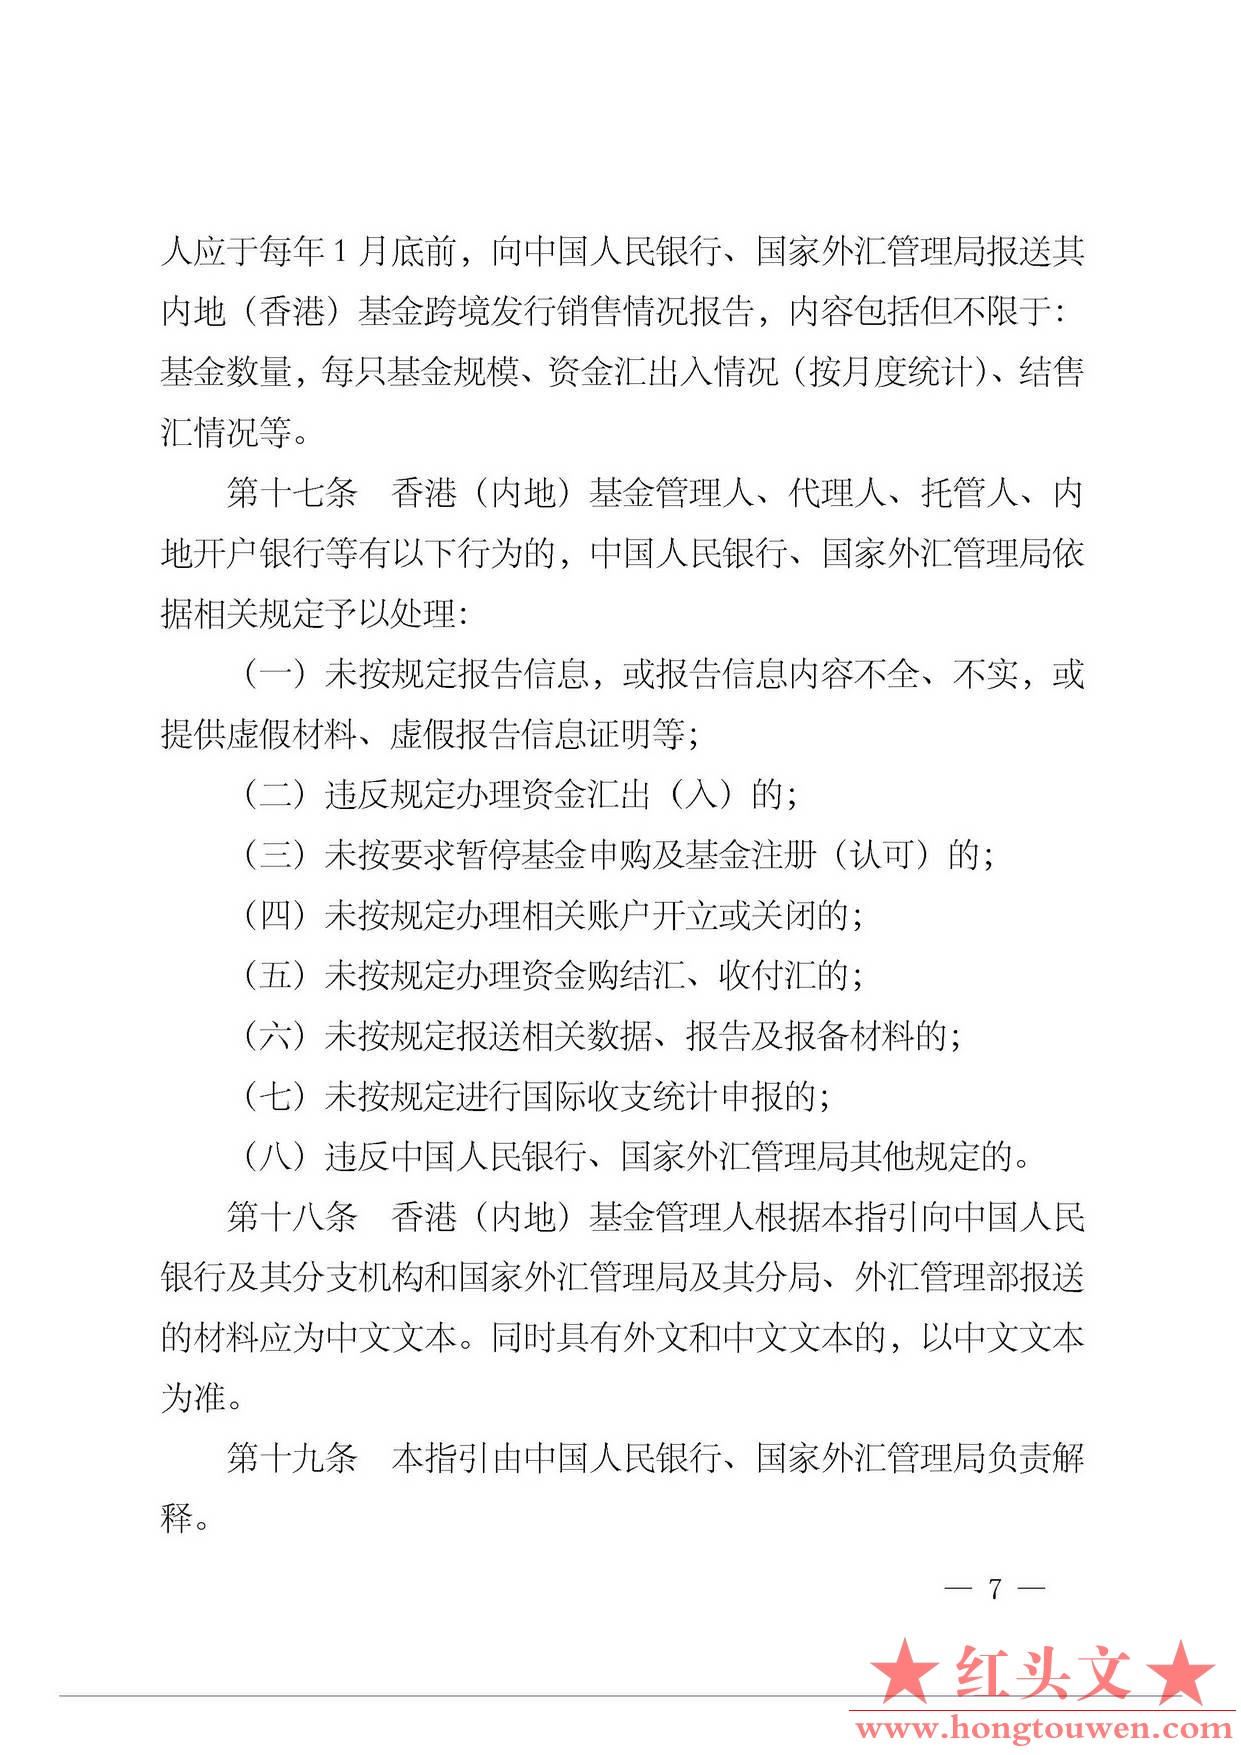 中国人民银行公告[2015]36号-内地与香港证券投资基金跨境发行销售资金管理操作指引_页.jpg